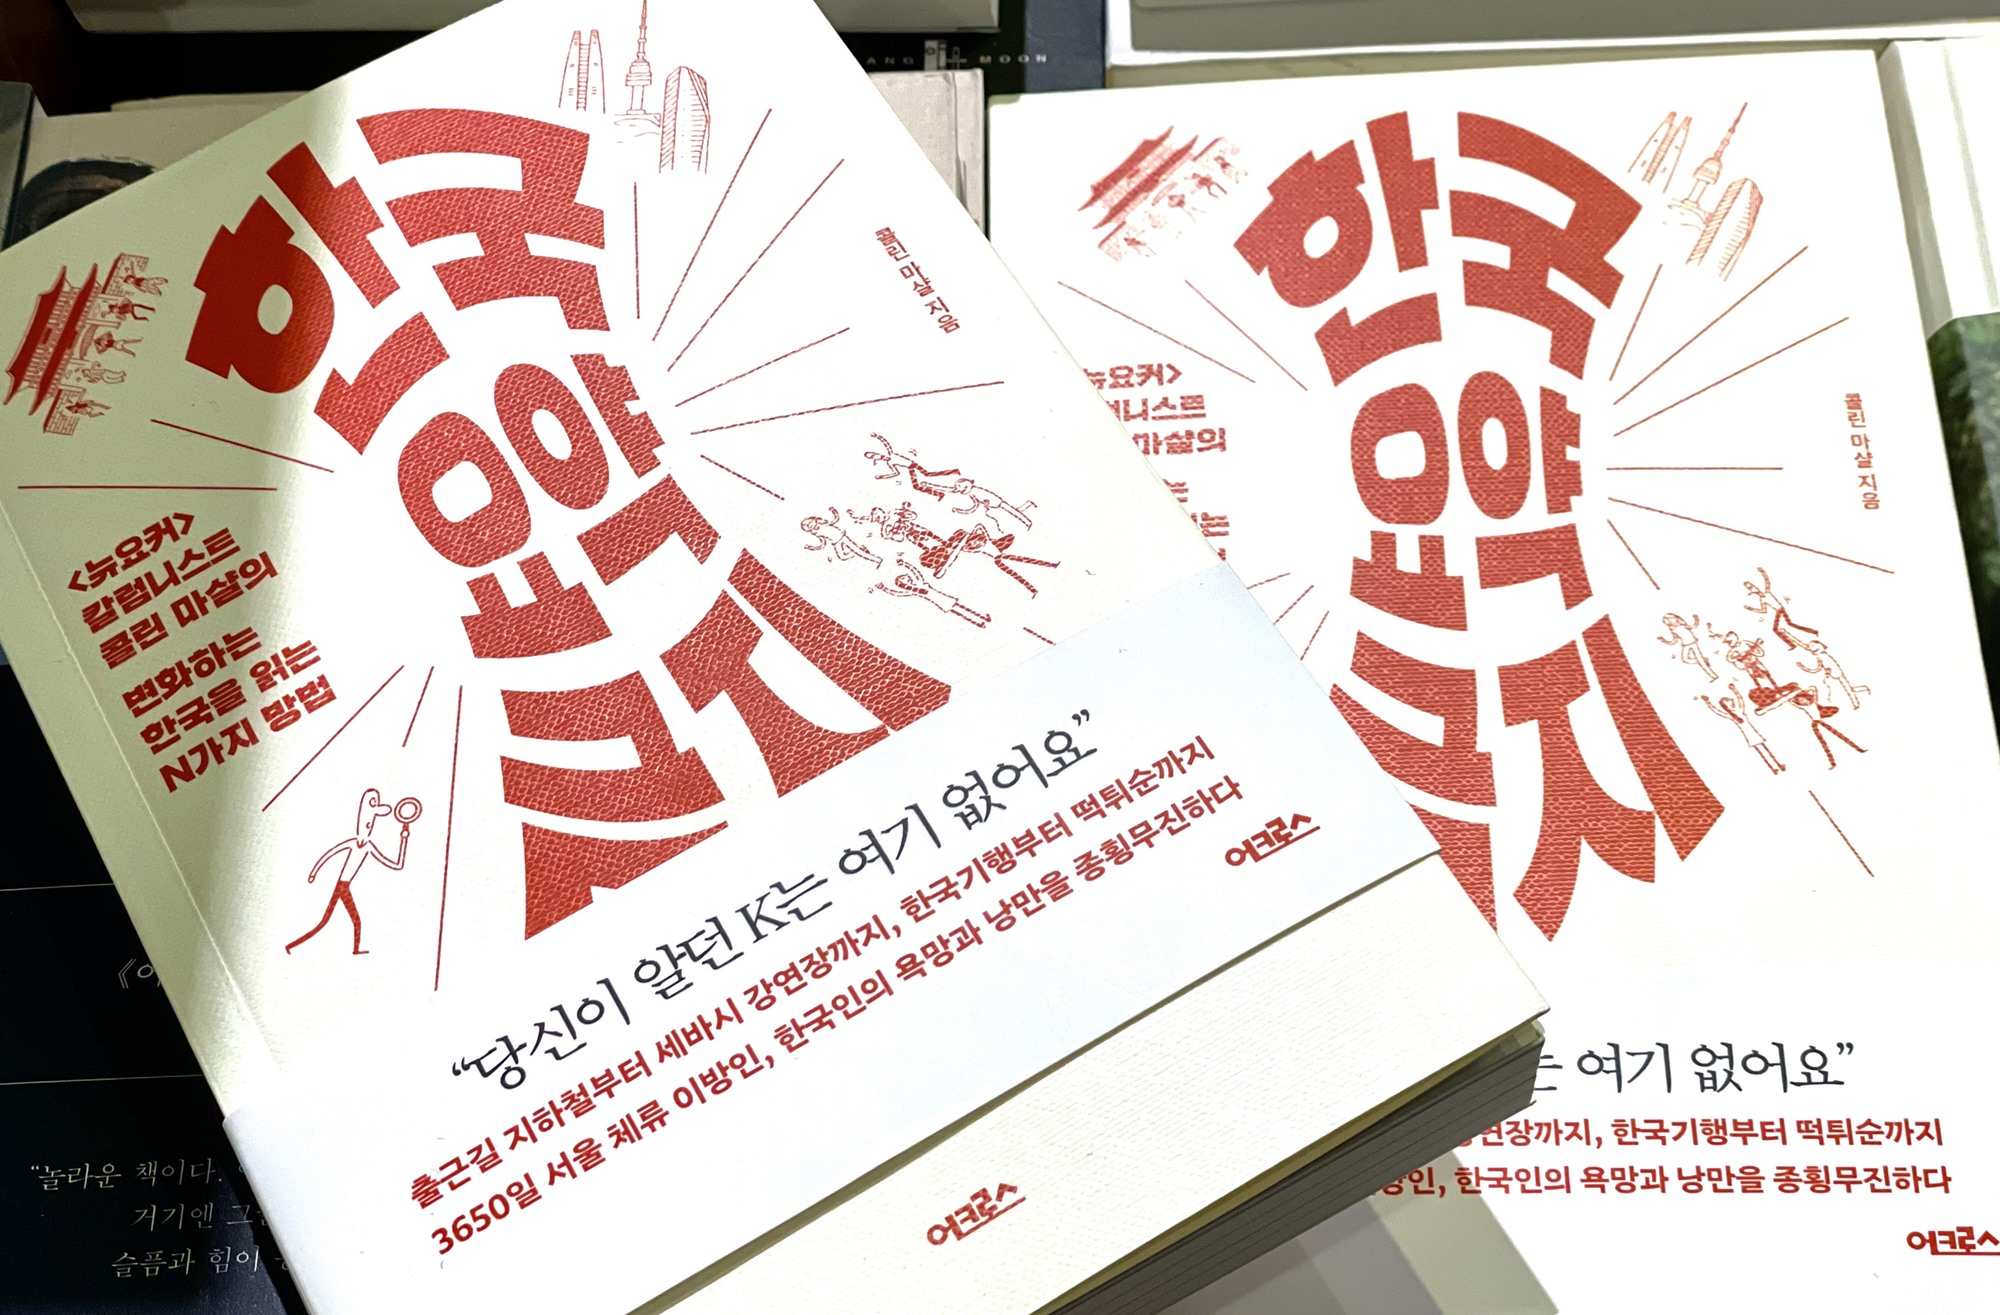 Bìa sách “Tóm tắt về Hàn Quốc: X” (tên tạm dịch từ ‘한국 요약 금지’) của Colin Marshall đã được xuất bản vào tháng trước. (Ảnh: Xu Aiying / Korea.net)